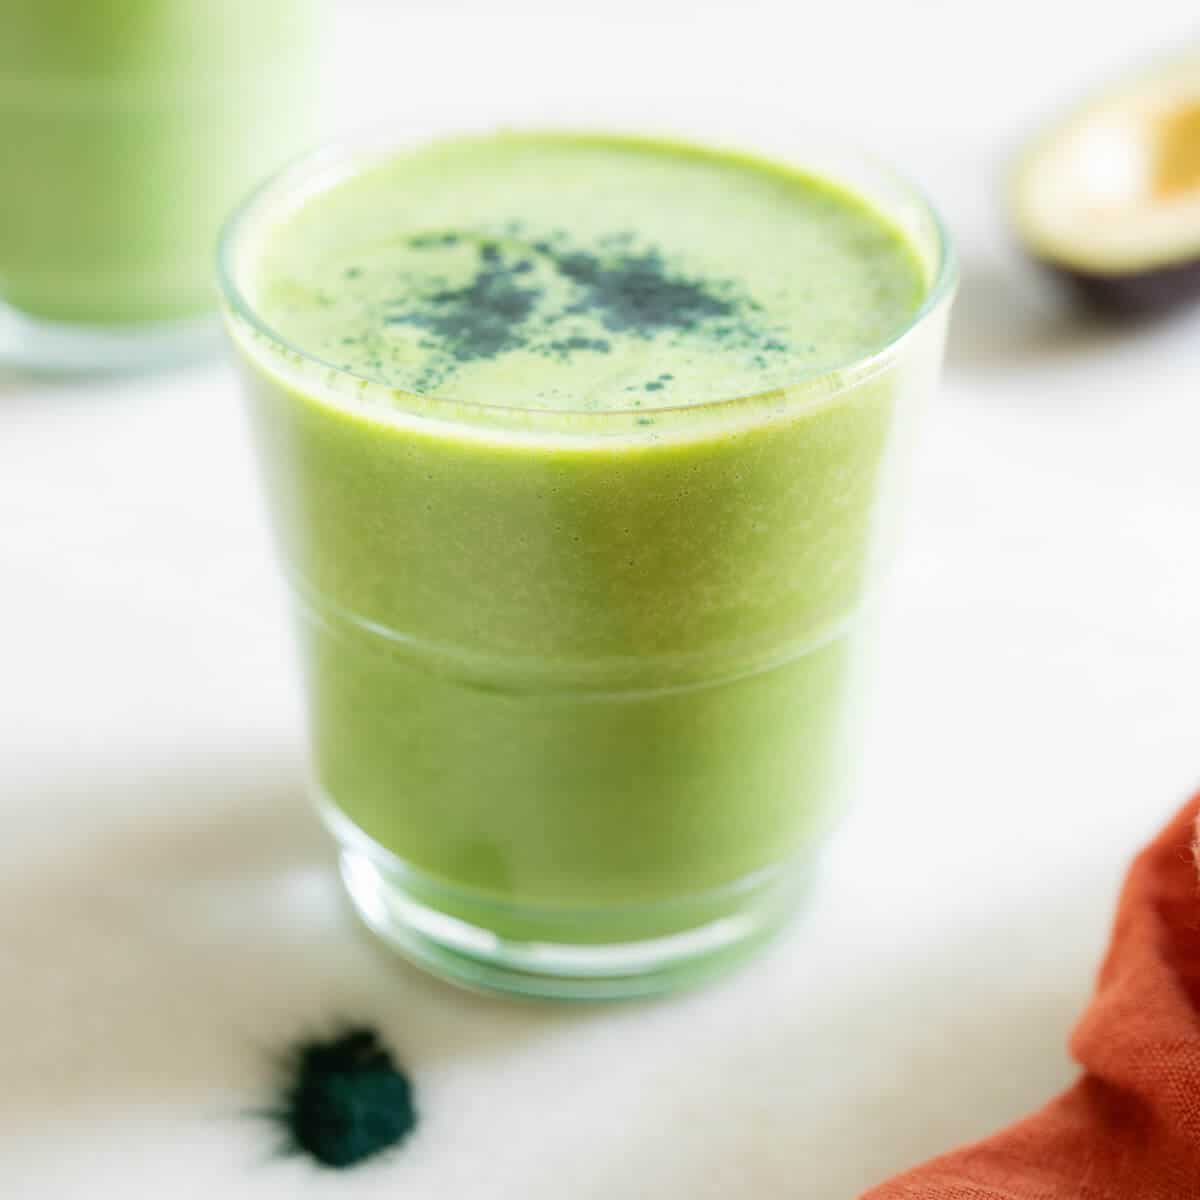 Green Smoothie Recipe with Avocado (Creamy & Healthy)